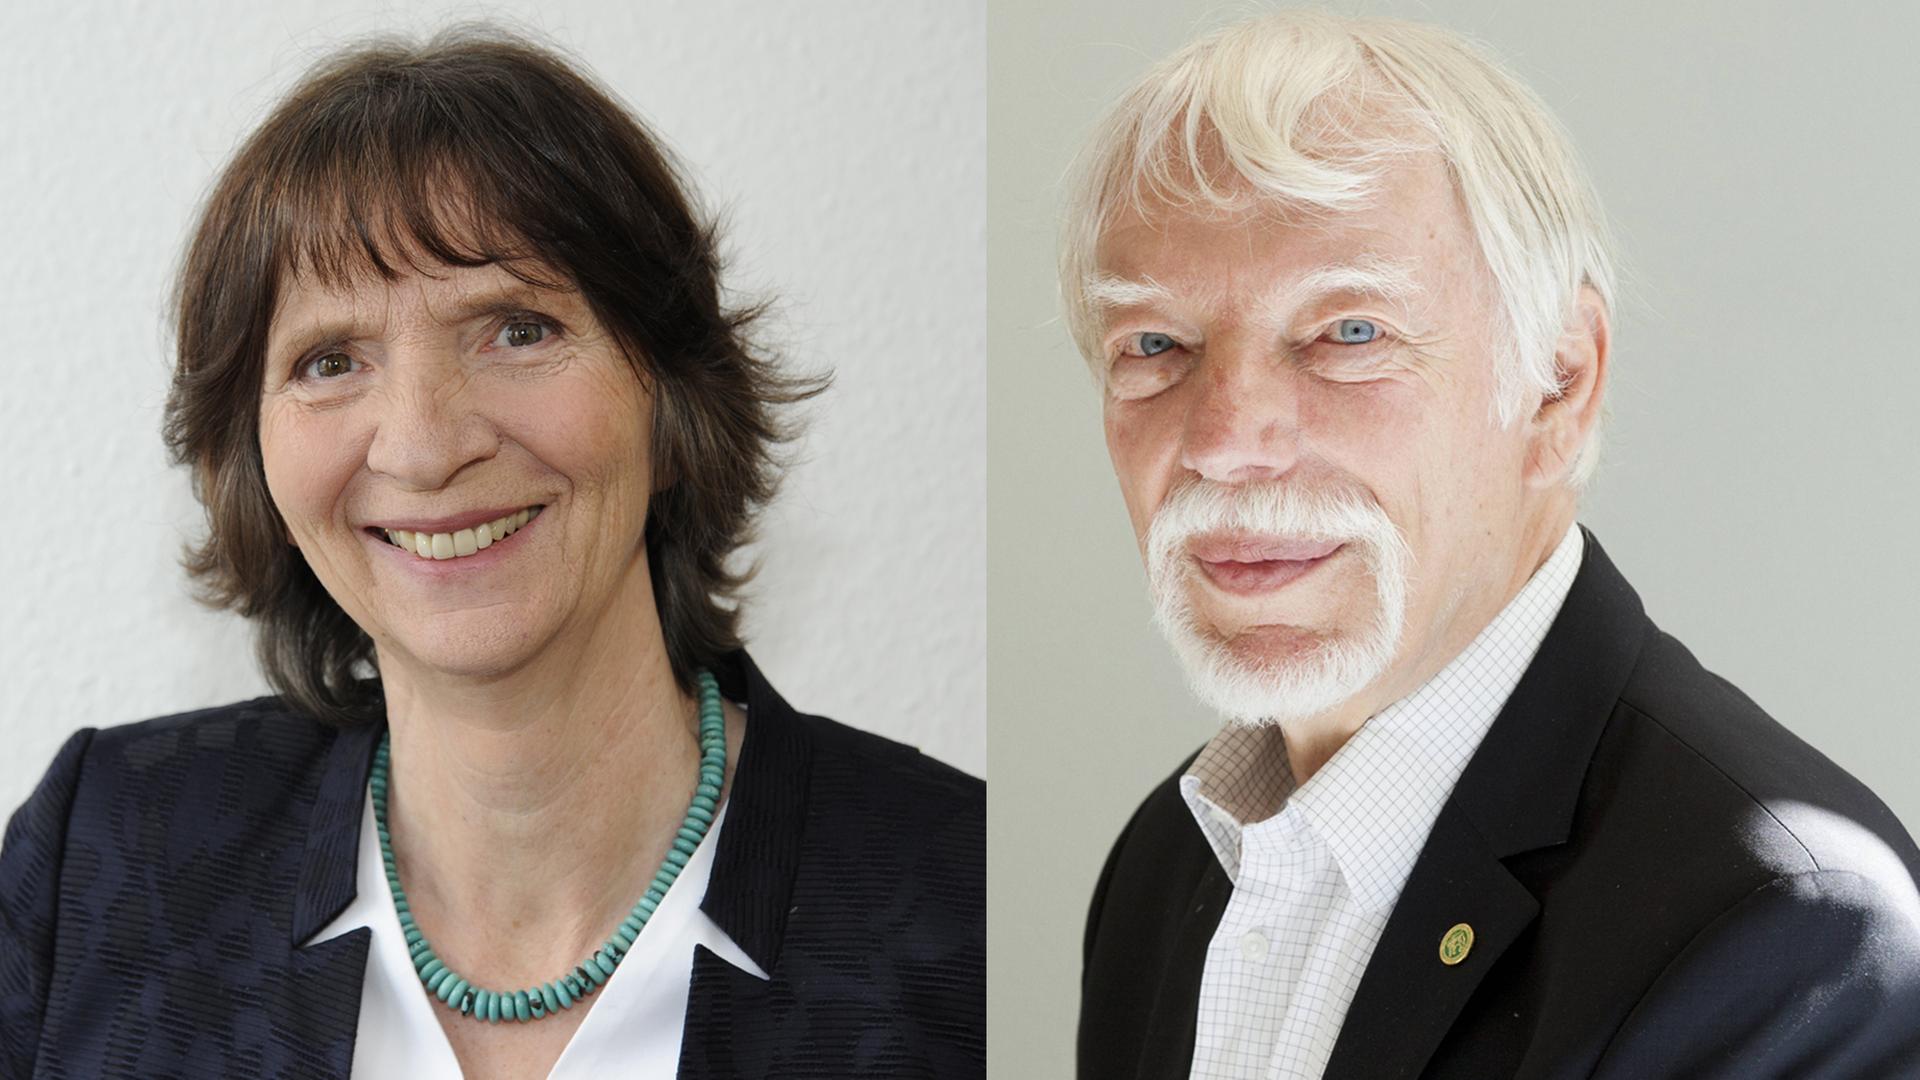 Aleida und Jan Assmann werden 2018 mit dem Friedenspreis des Deutschen Buchhandels ausgezeichnet